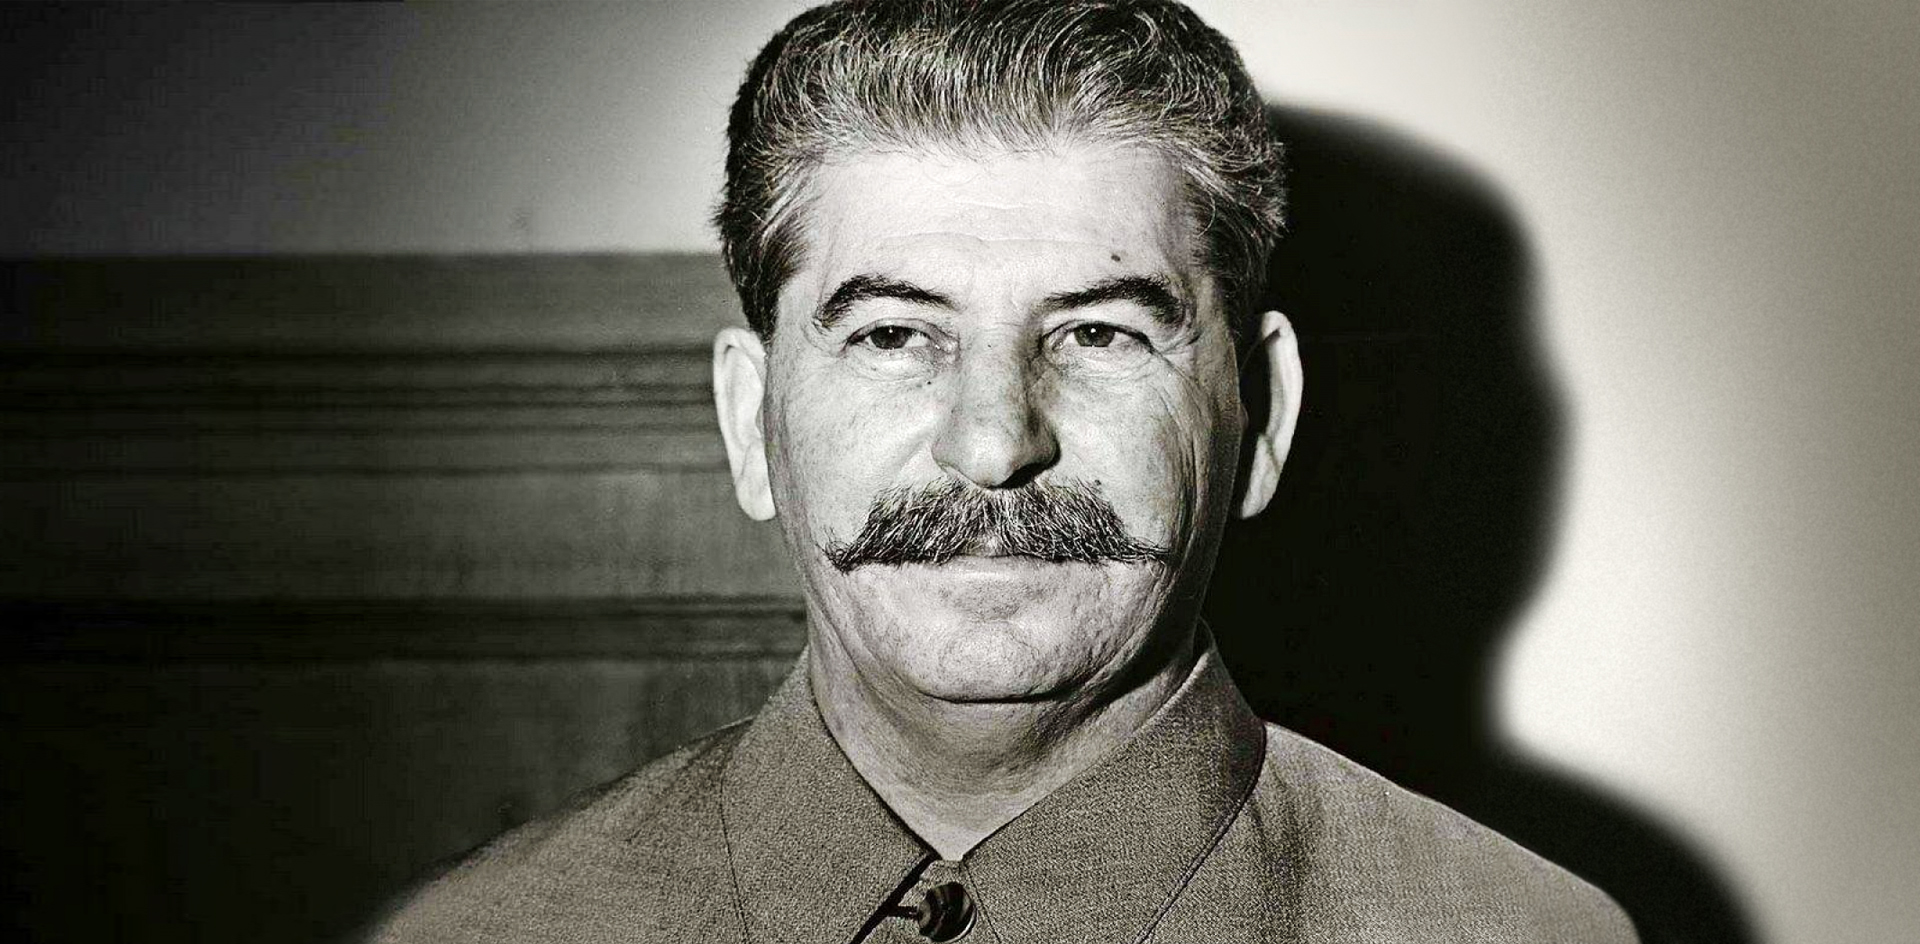 Сталин и его восприятие в Италии: от ориентира до демонизации